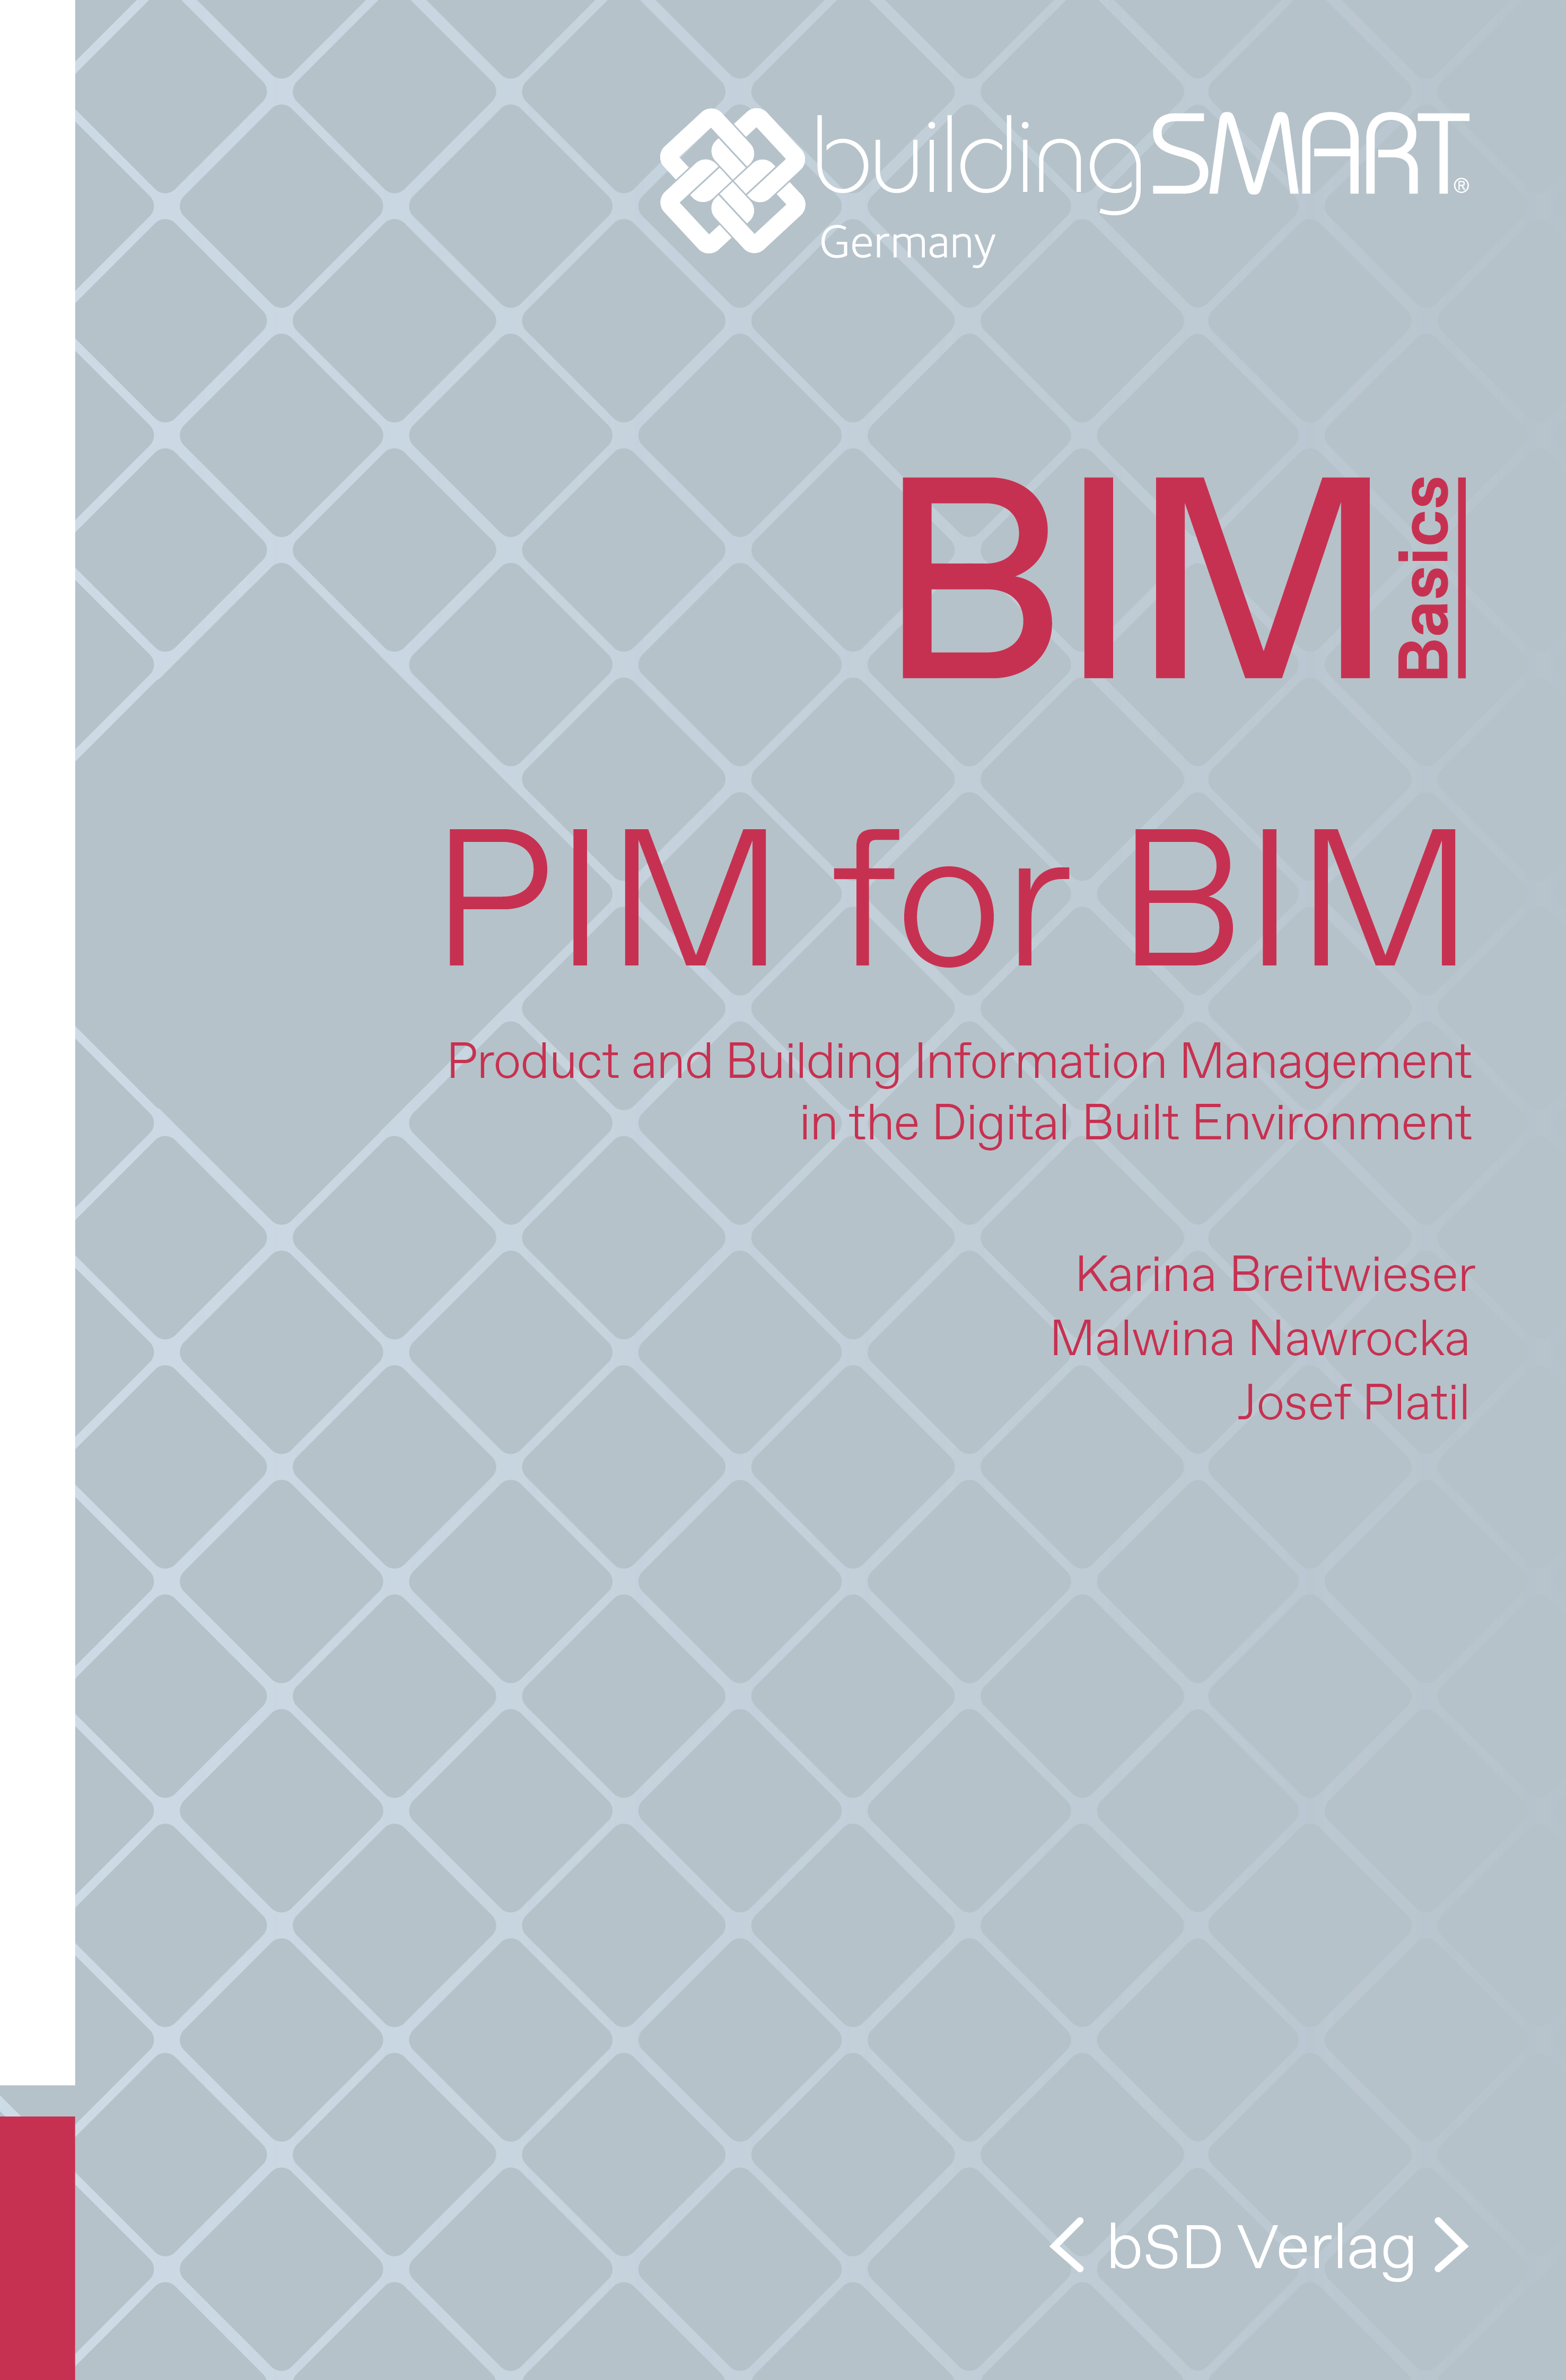 bSD Verlag/BIM Basics: PIM for BIM